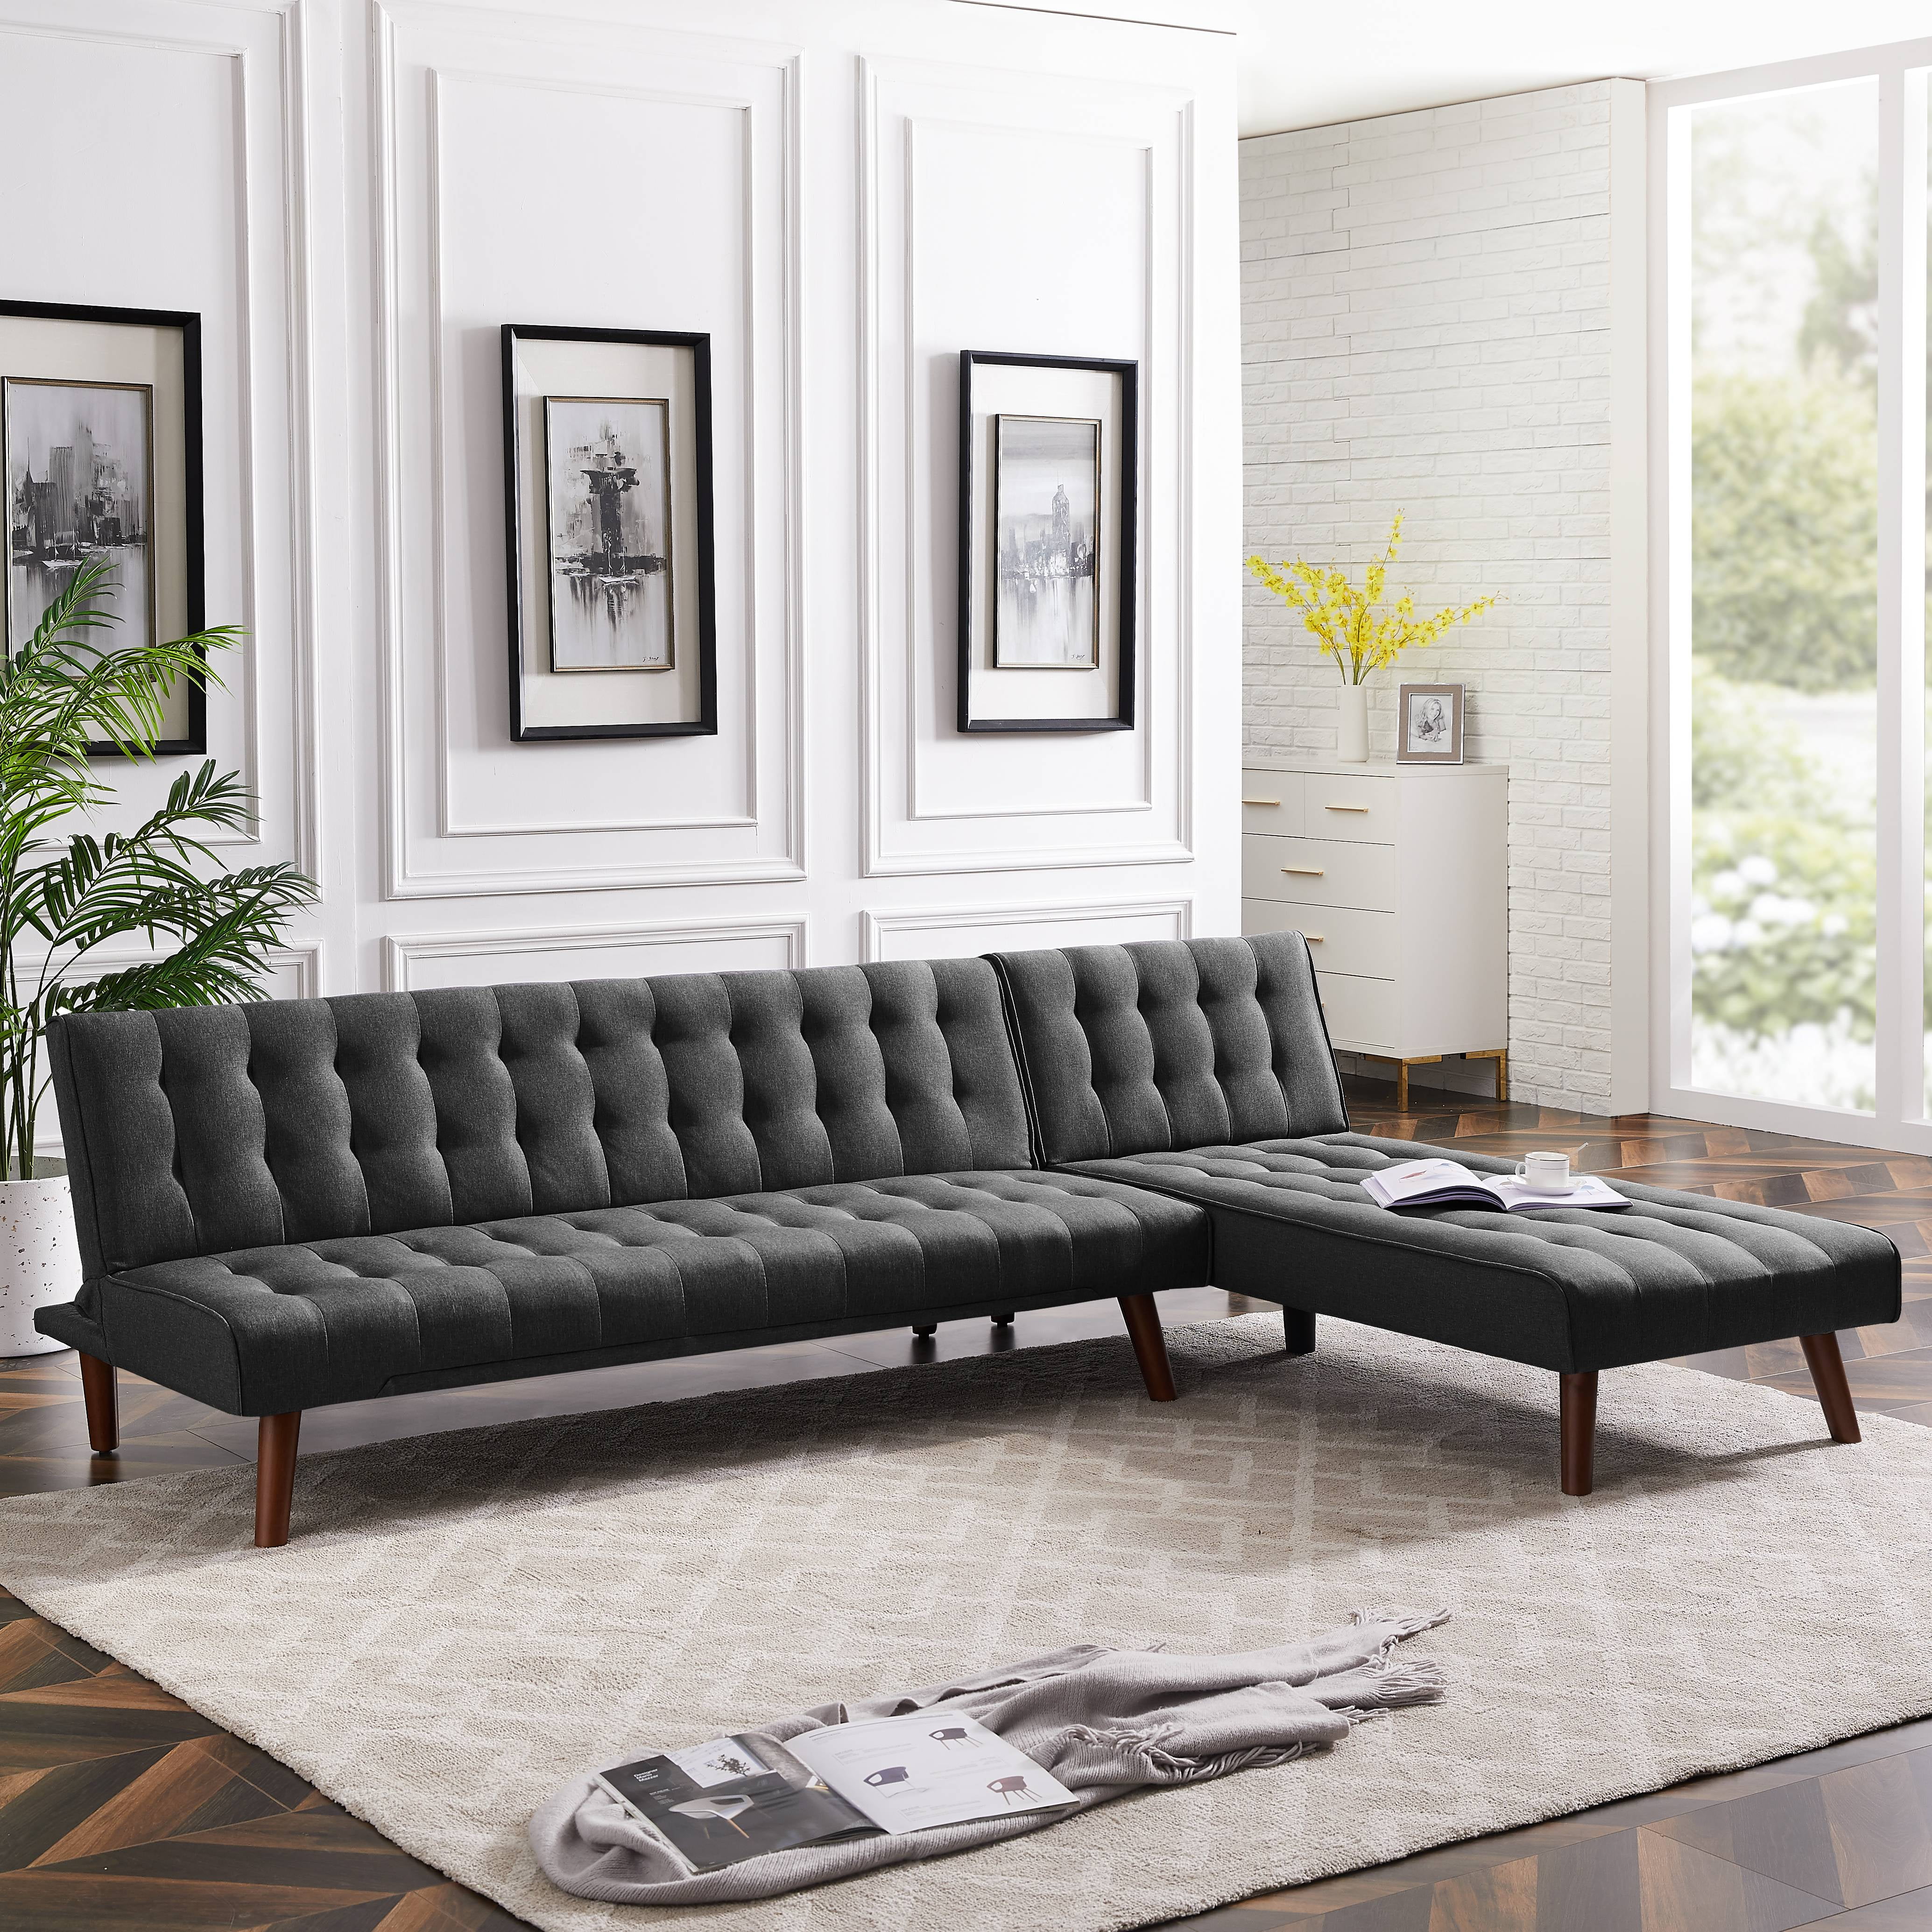 100" Sleeper Couch Sofa Set, URHOMEPRO 4Seat Functional